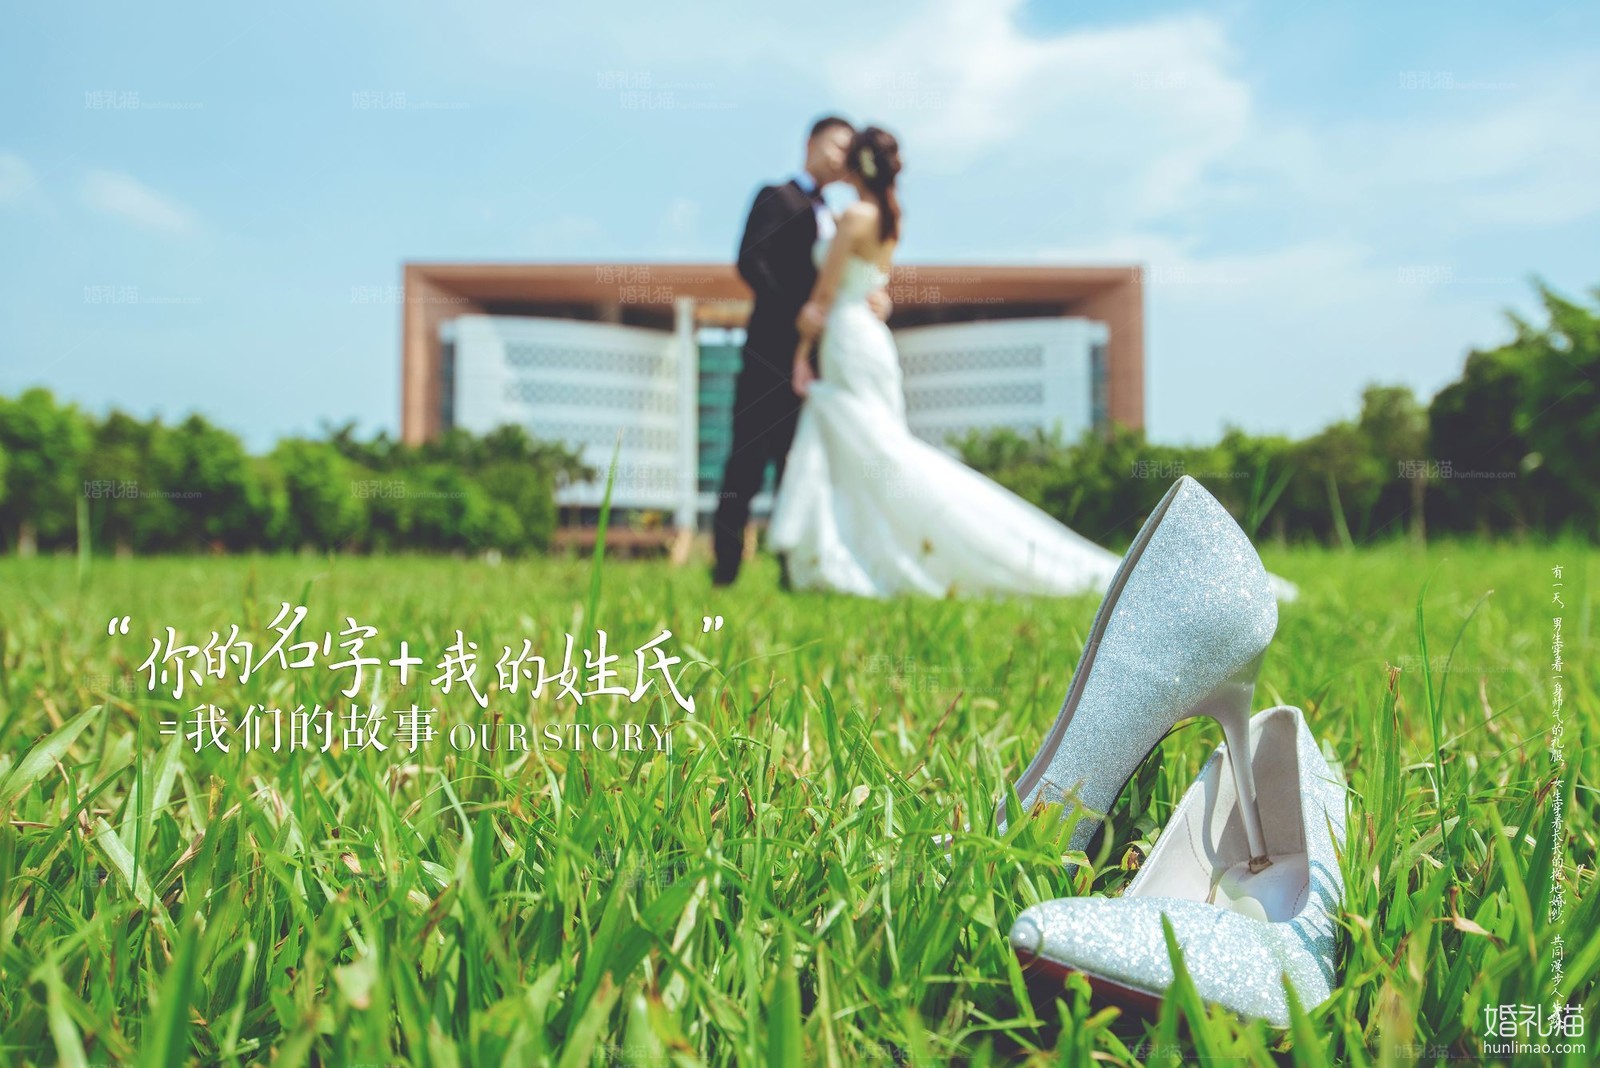 2018年11月广州婚纱照图片,,佛山婚纱照,婚纱照图片